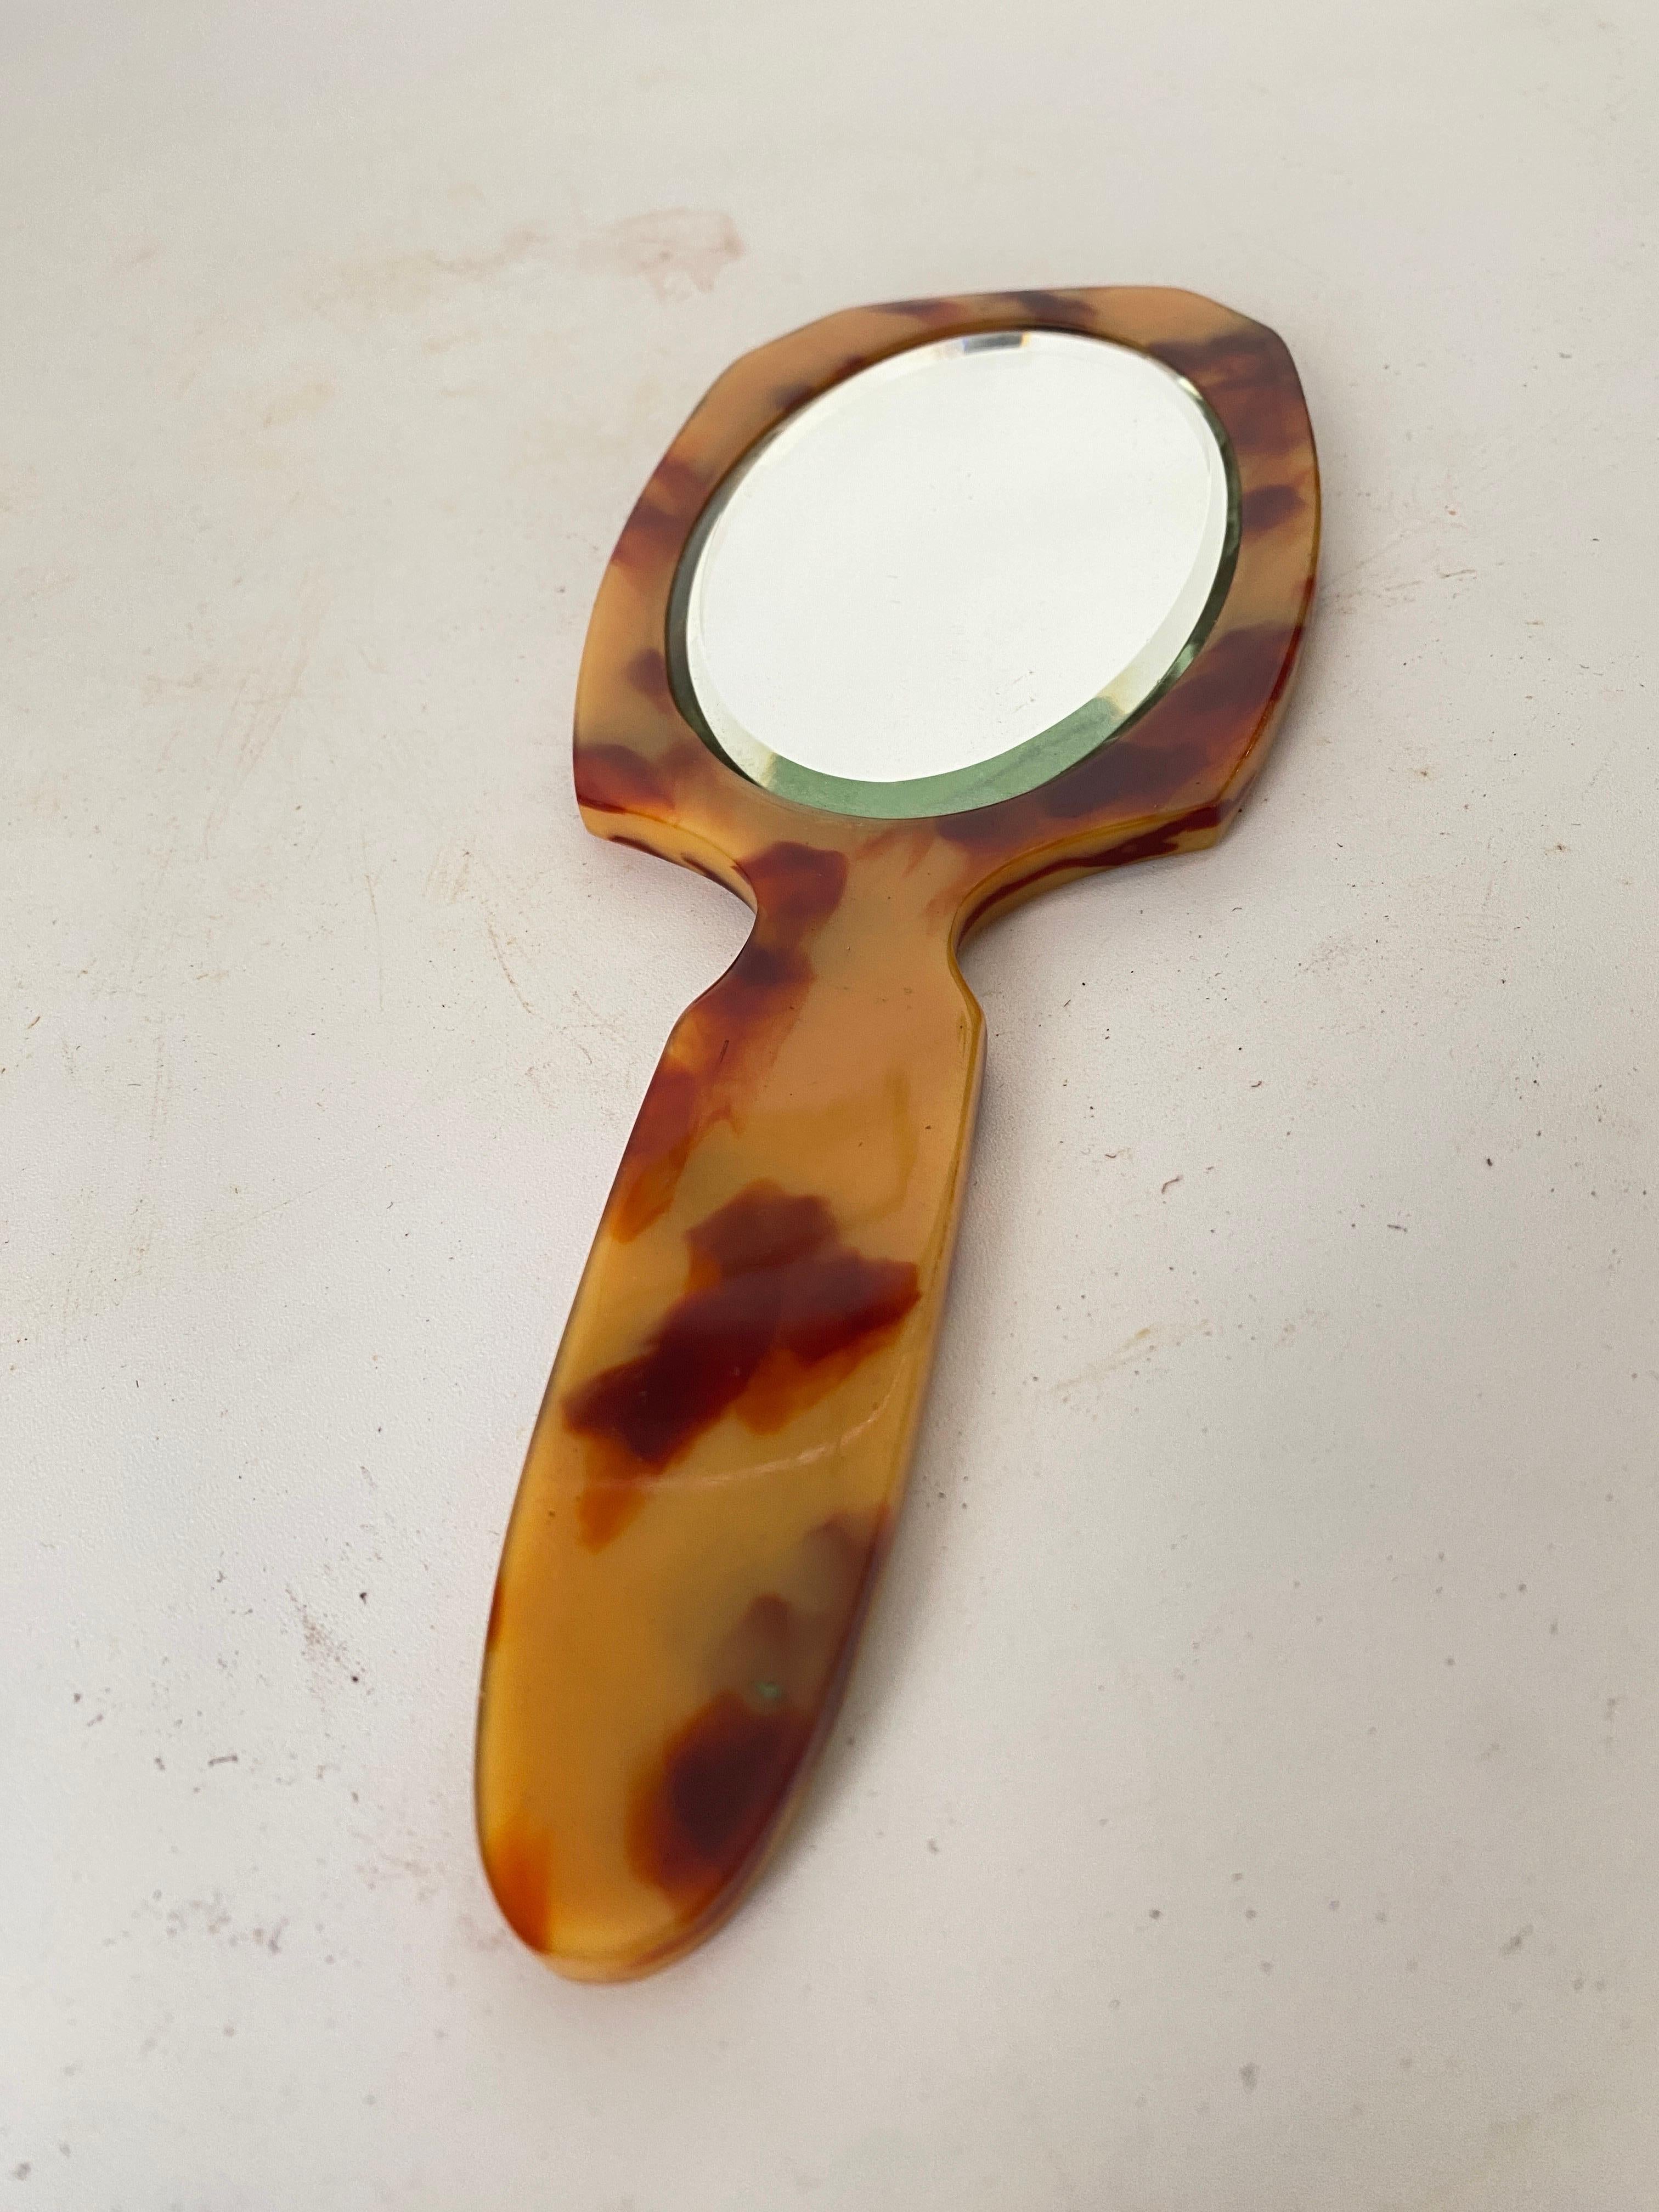 Dieser Spiegel ist ein Handspiegel. Aus schildpattähnlichem Bakelit. Es wurde um 1970 in Frankreich hergestellt.
Farbe: Beige und Braun.